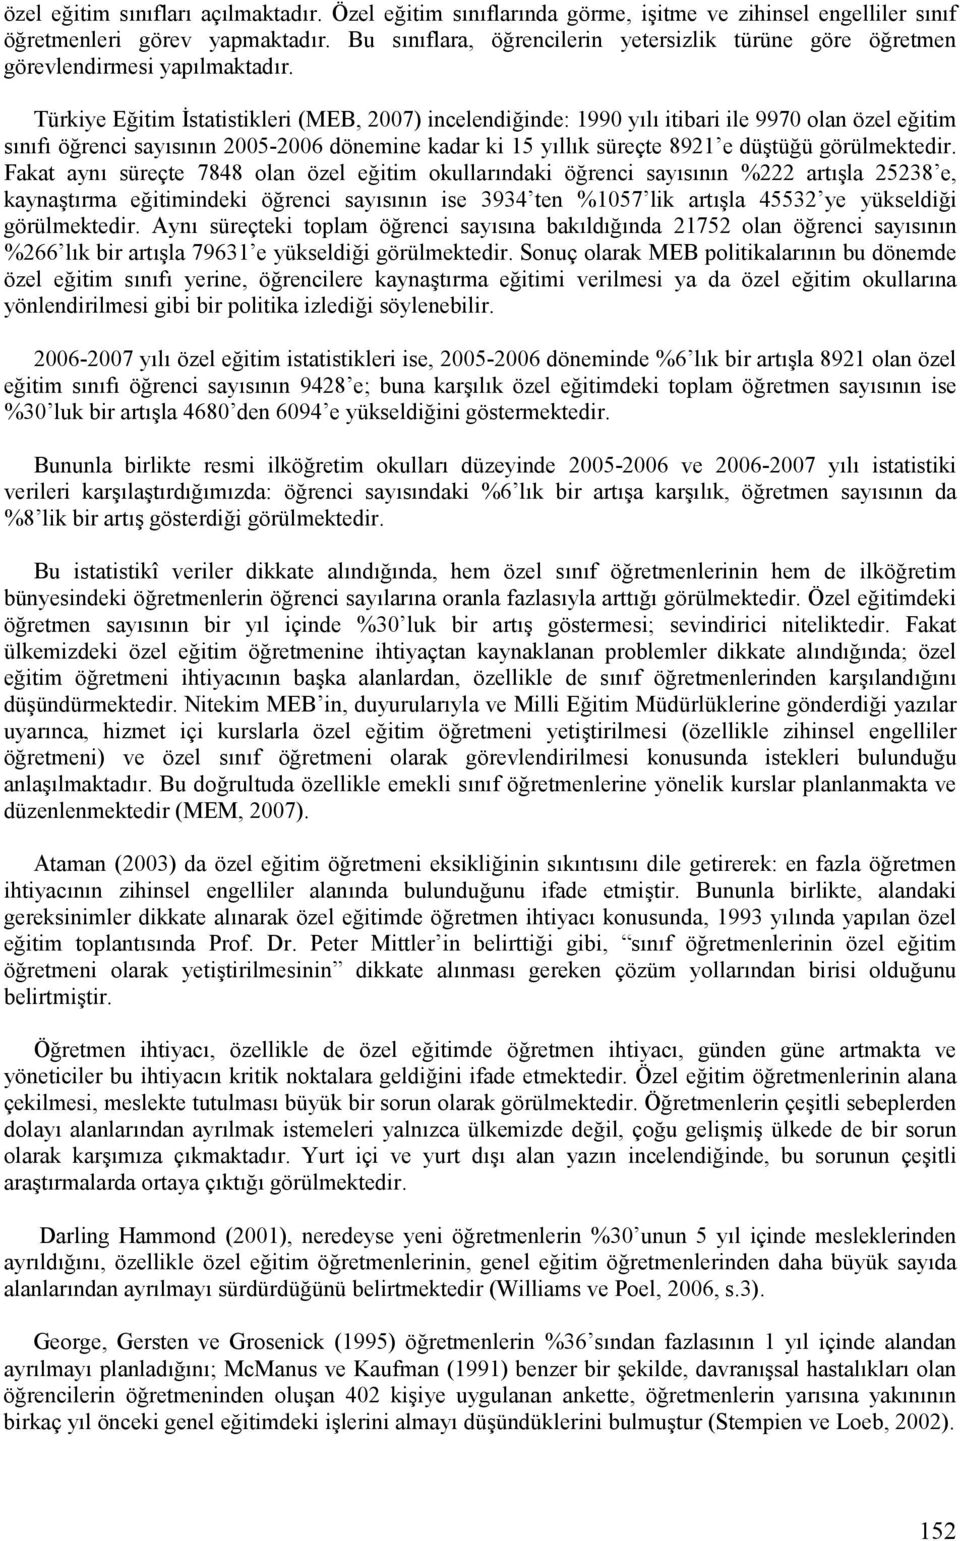 Türkiye Eitim statistikleri (MEB, 2007) incelendiinde: 1990 yflf itibari ile 9970 olan özel eitim sfnfff örenci sayfsfnfn 2005-2006 dönemine kadar ki 15 yfllfk süreçte 8921 e düetüü görülmektedir.